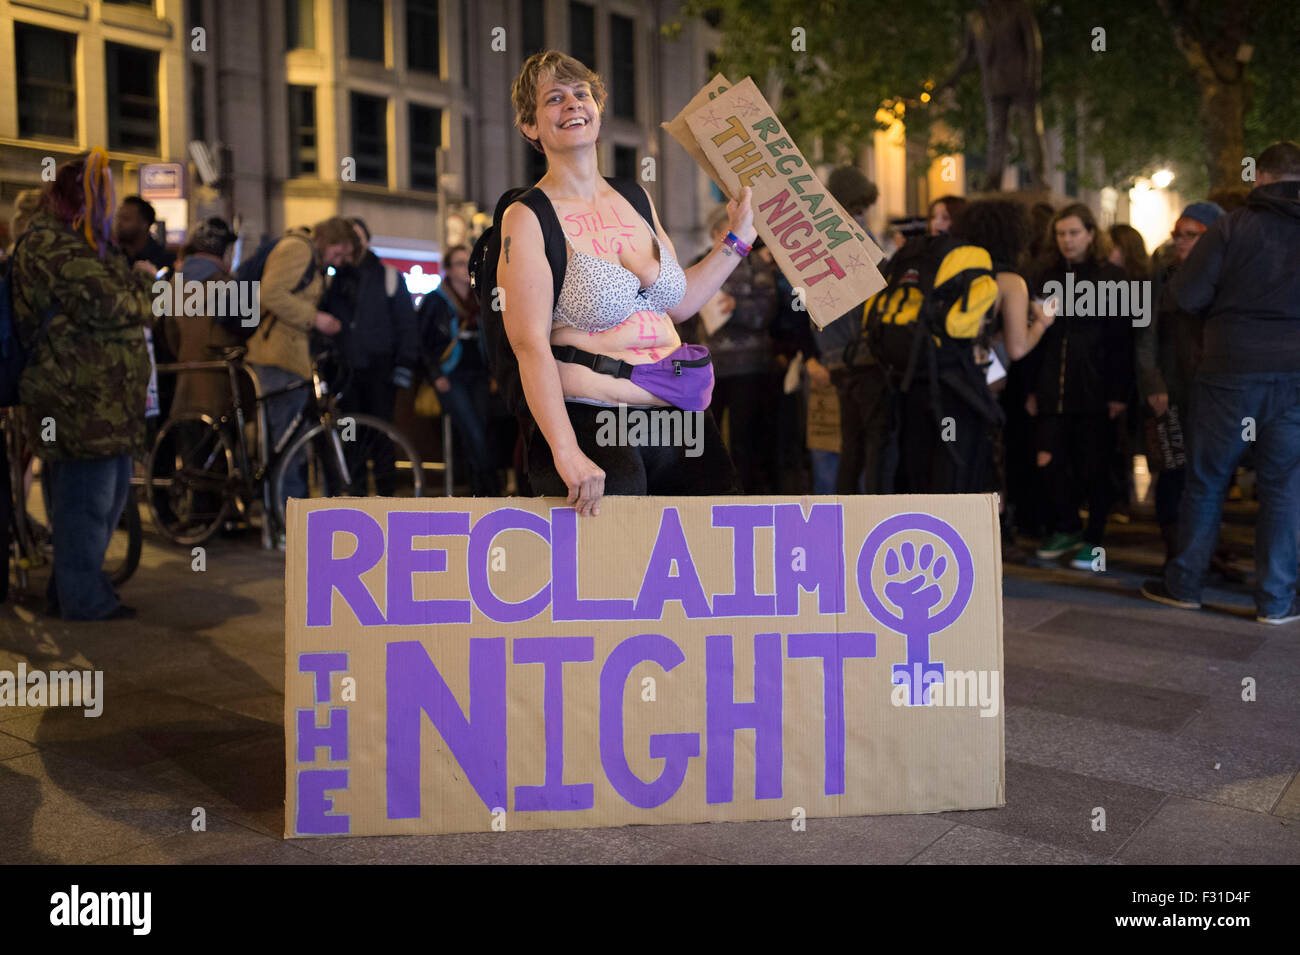 A zurückfordern Nachtmarsch zur Unterstützung der Frauenrechte in Cardiff, Südwales. Stockfoto